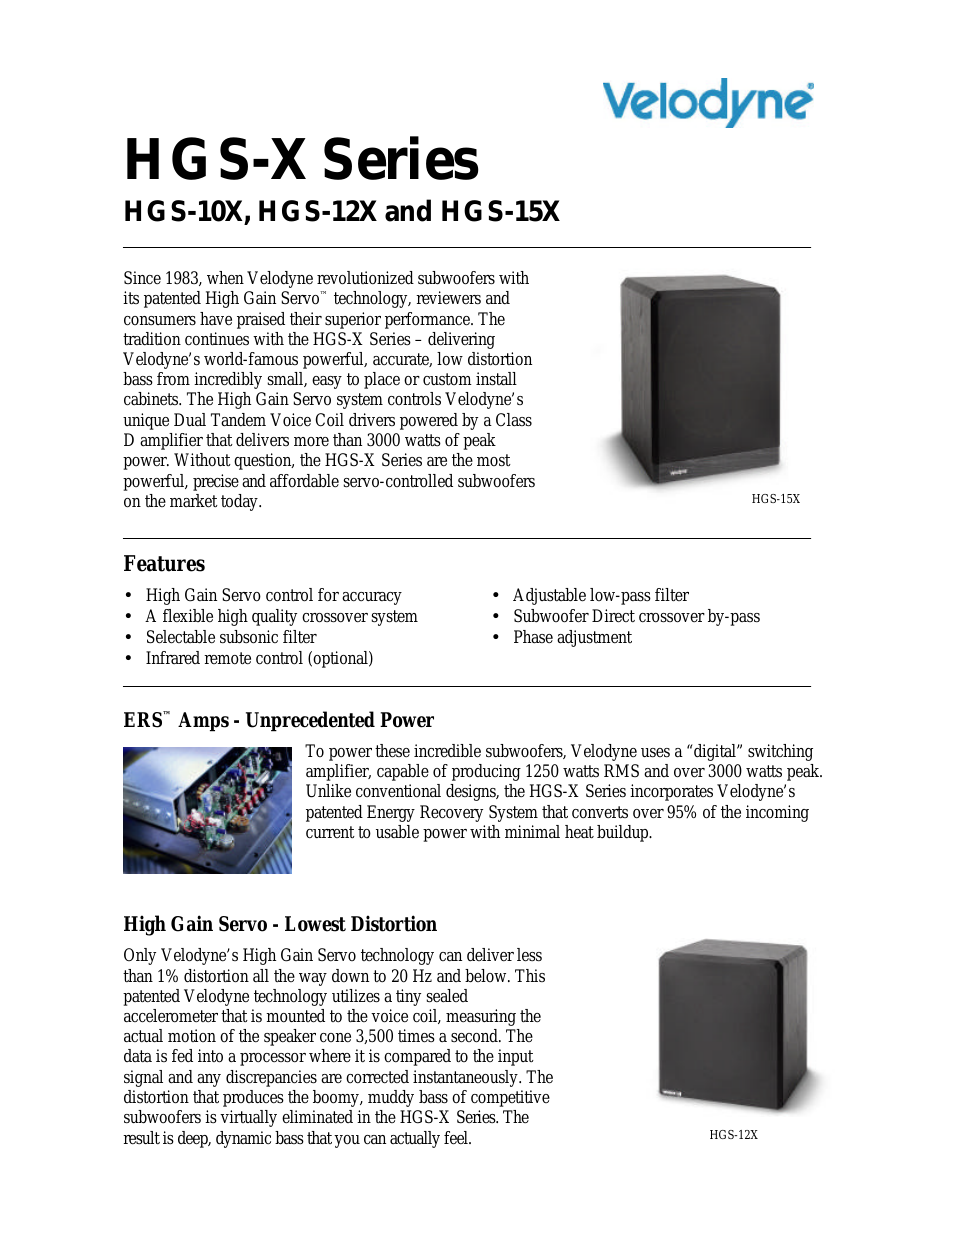 HGS-X SERIES HGS-15X